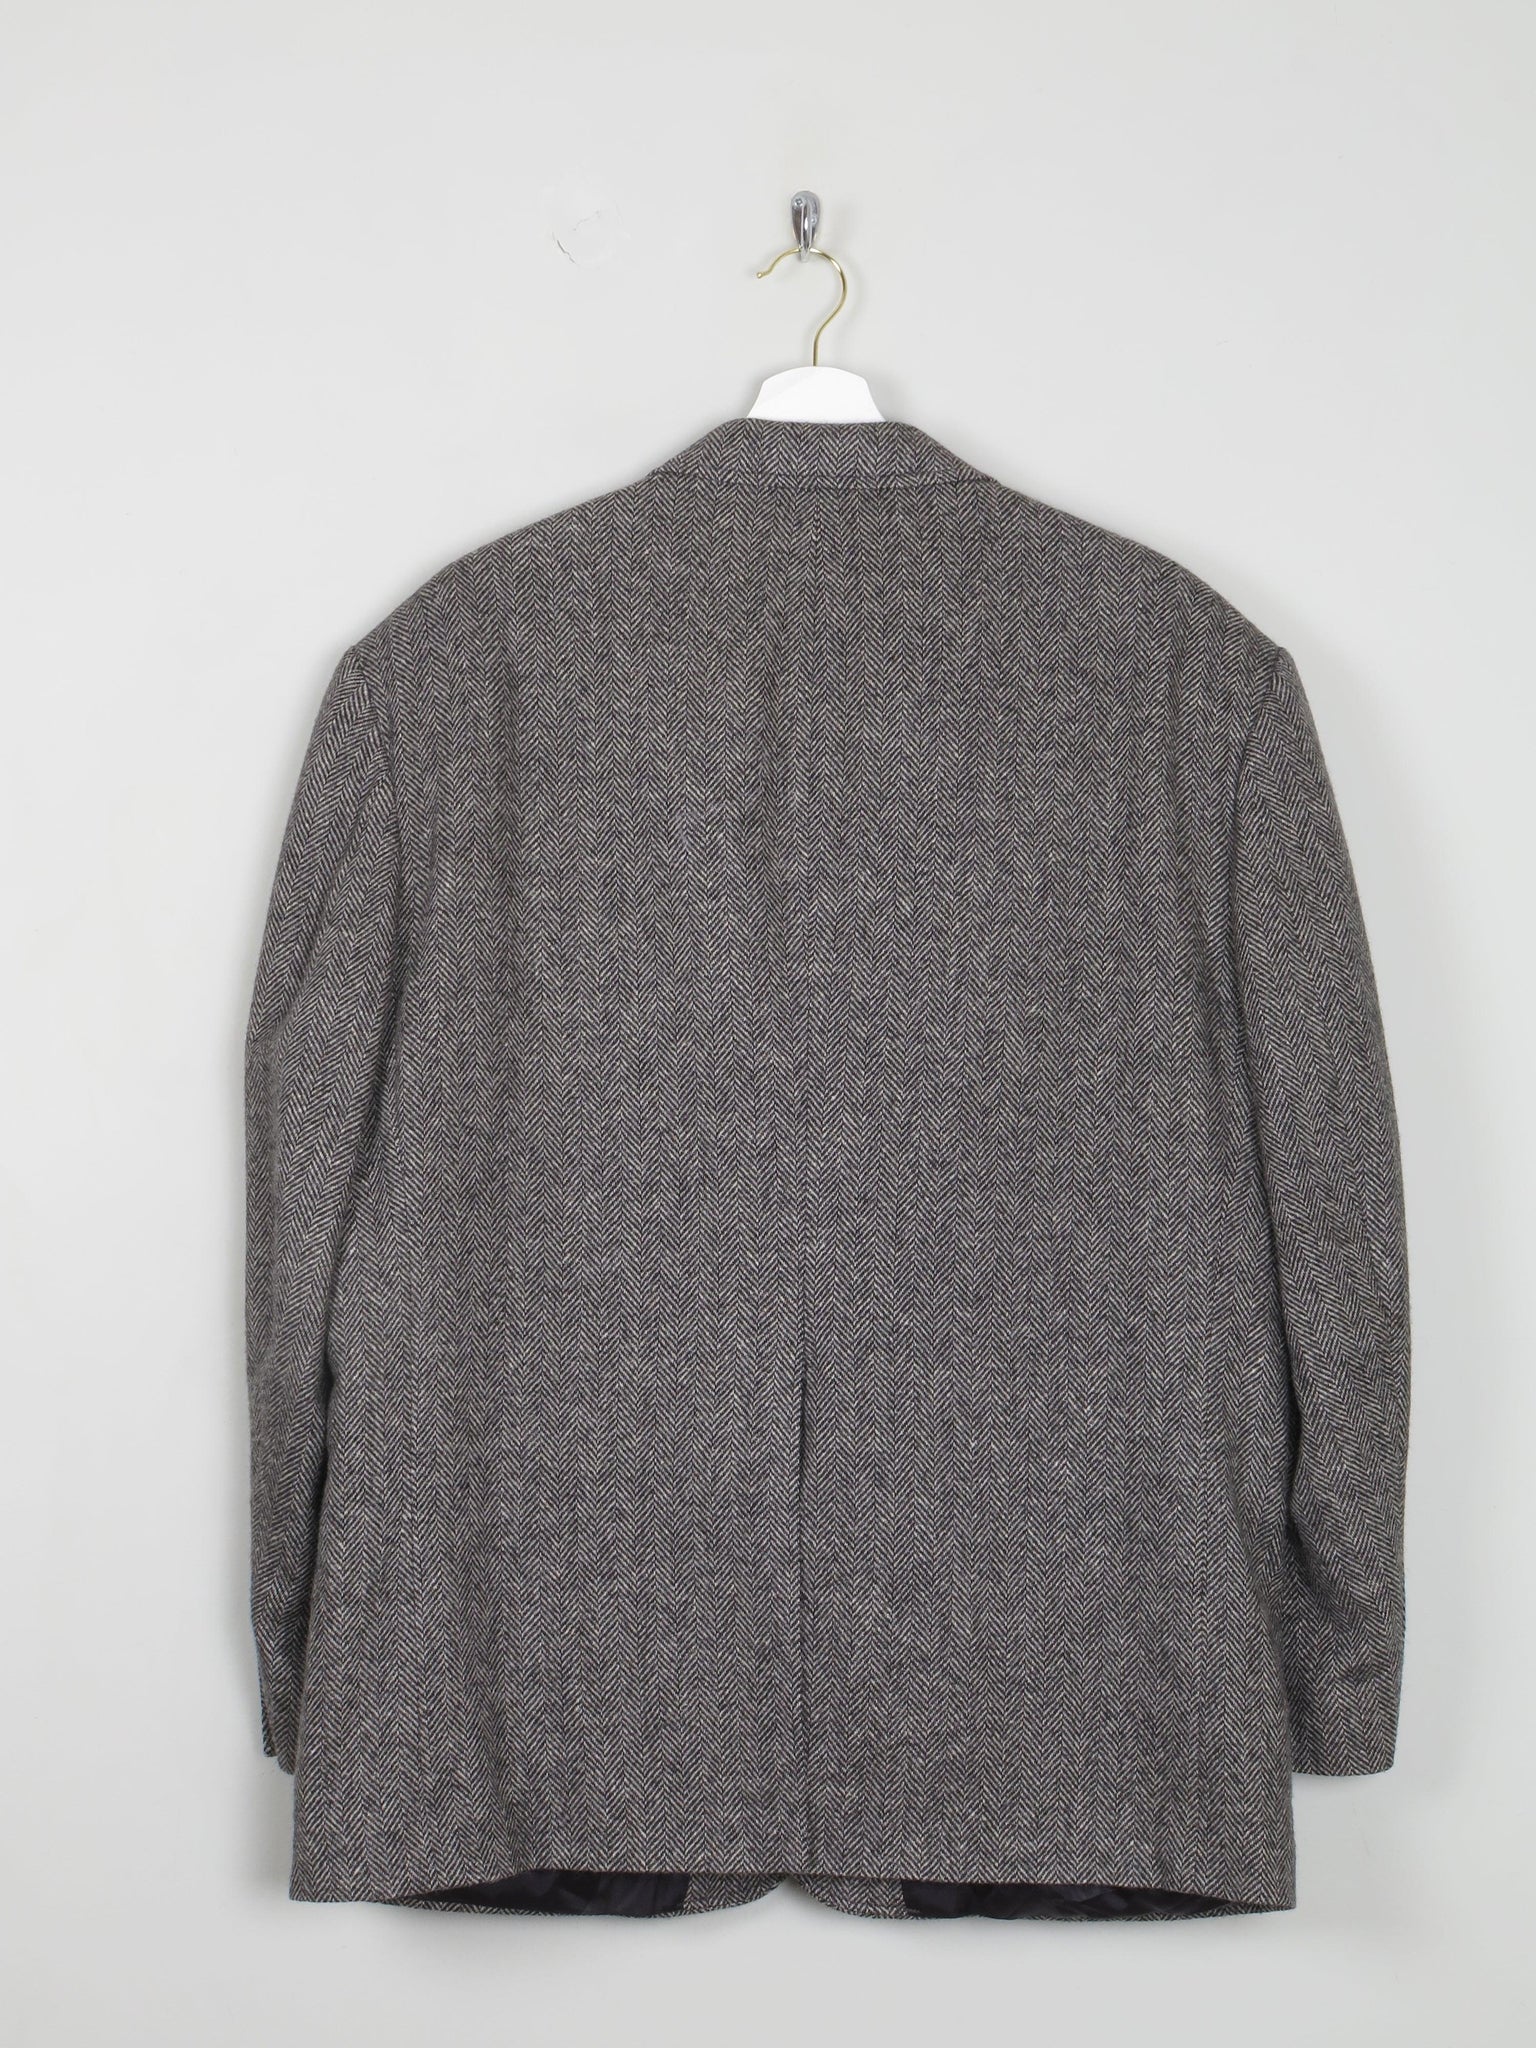 Men's Grey & Black Tweed Jacket L/44" S length - The Harlequin